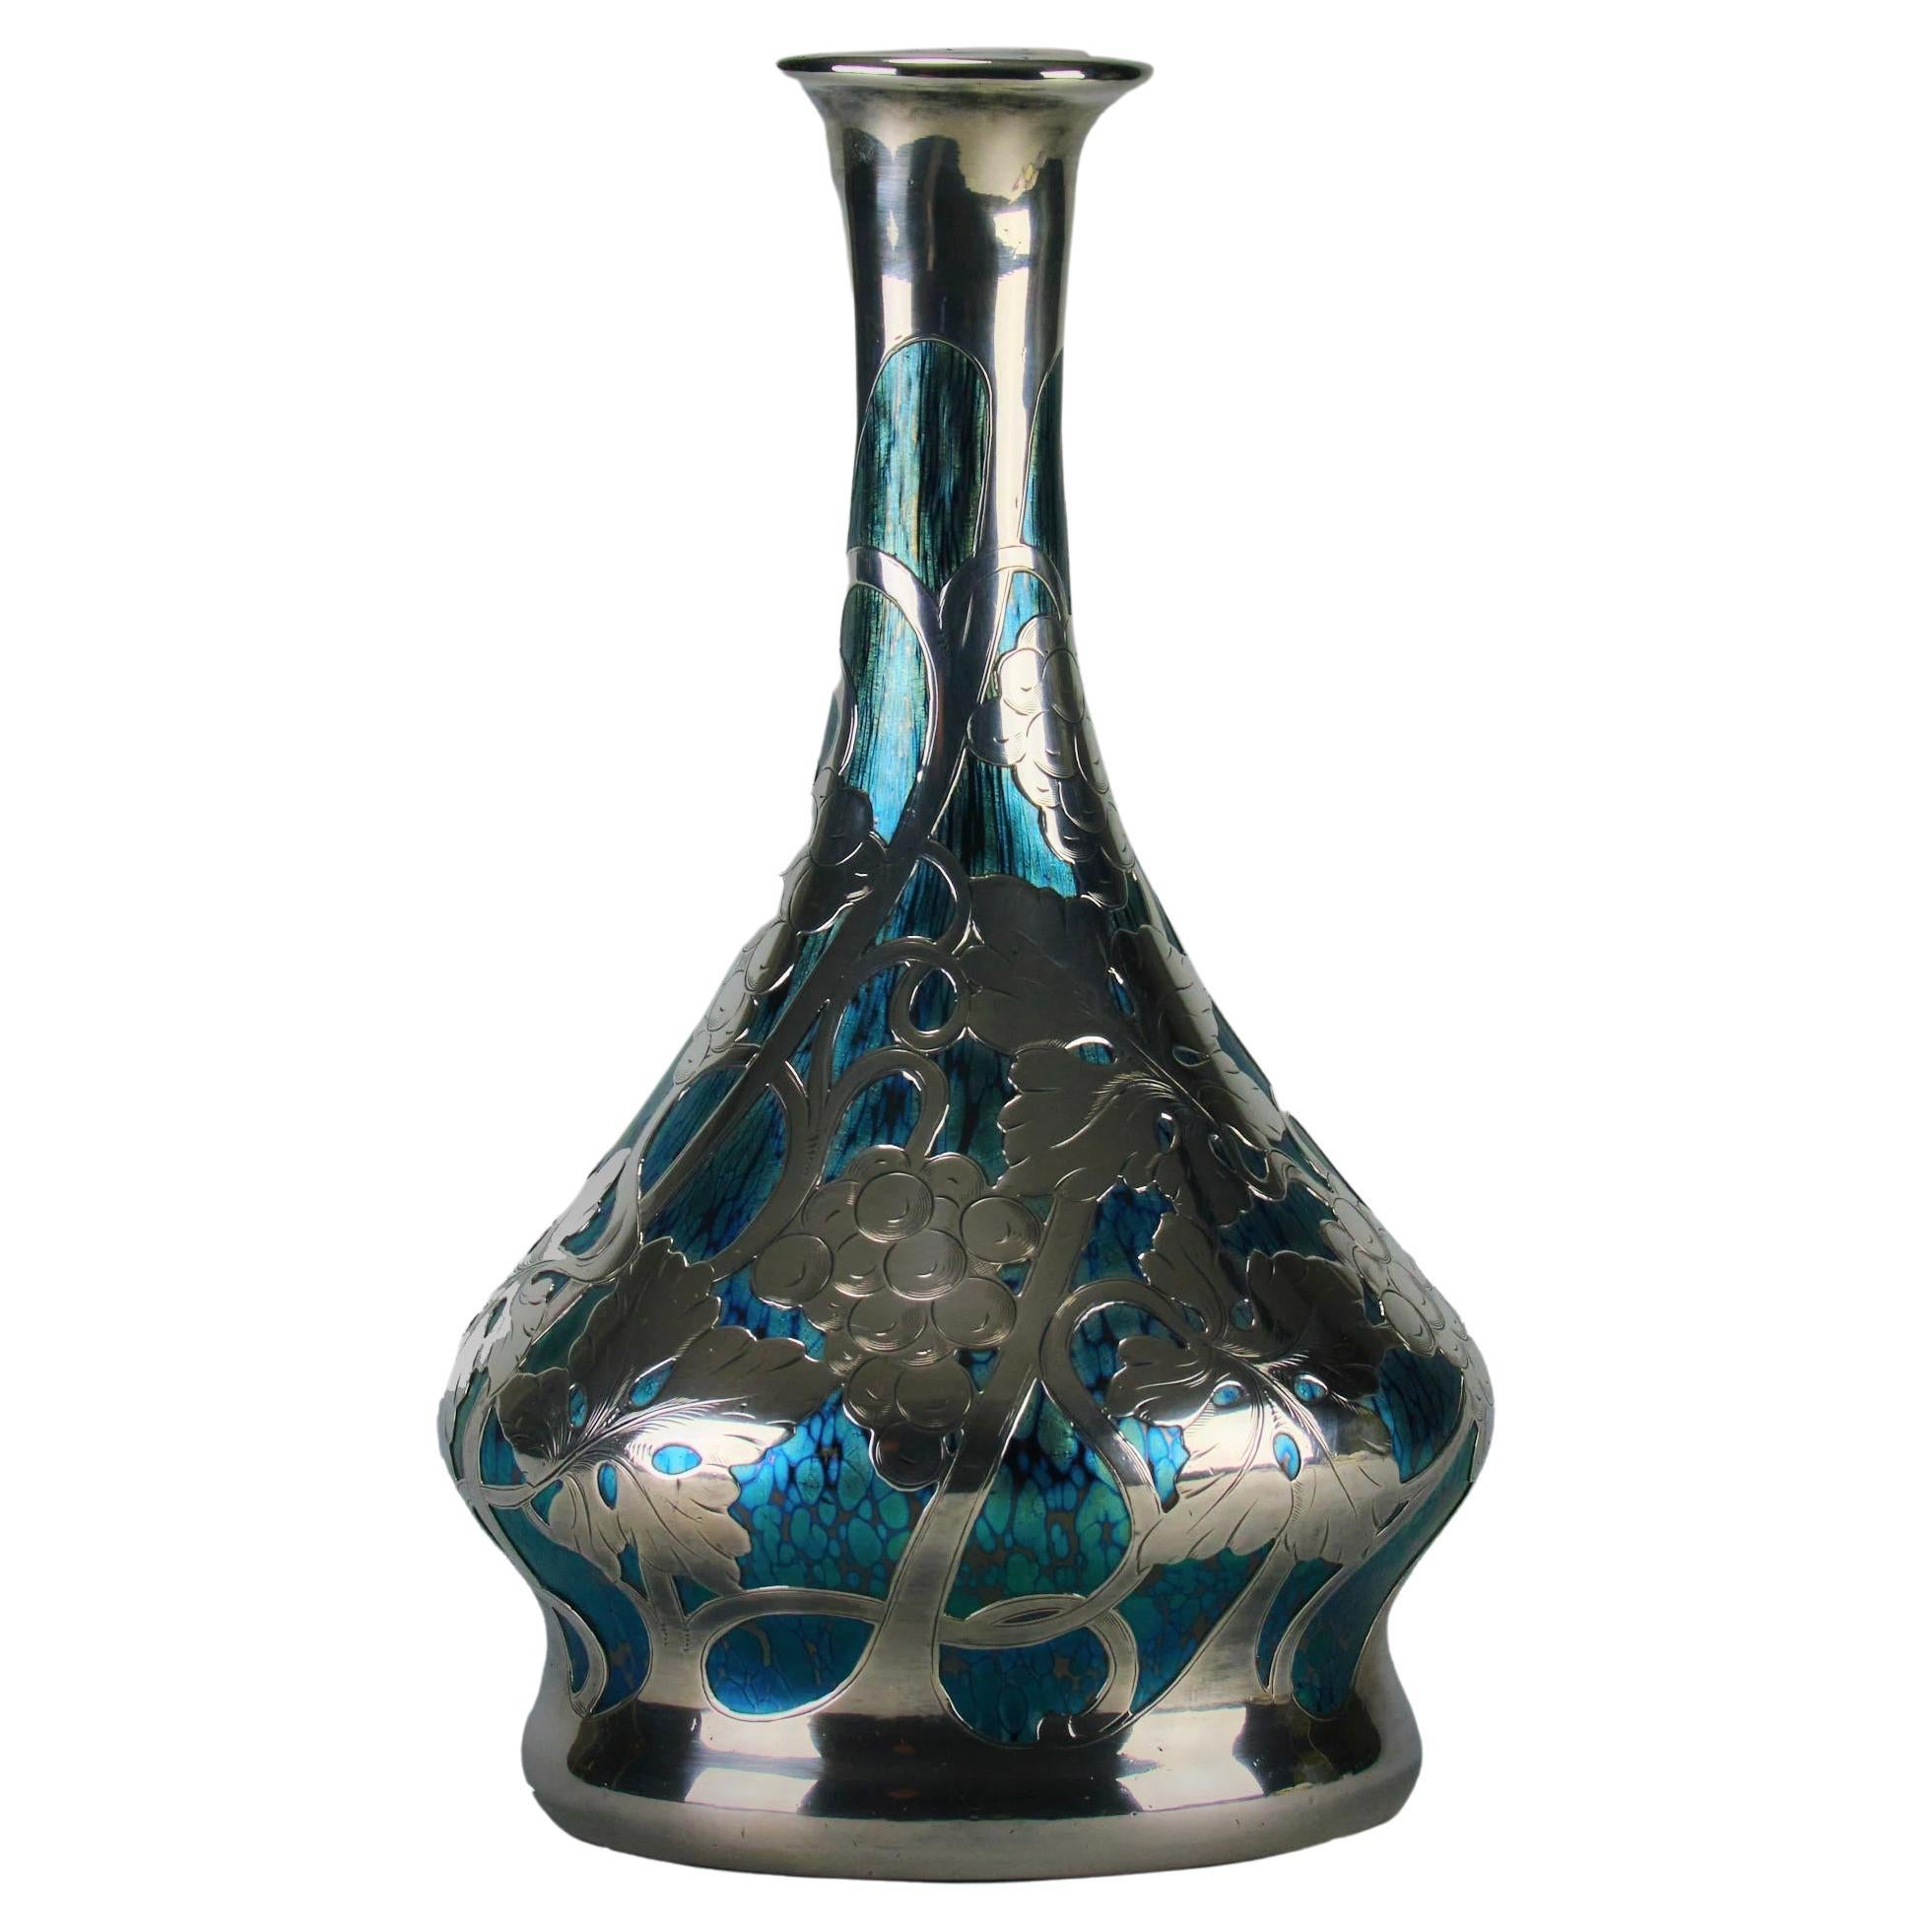 “Cobalt Papillon Vase” Art Nouveau Glass Vase by the Loetz Glassworks